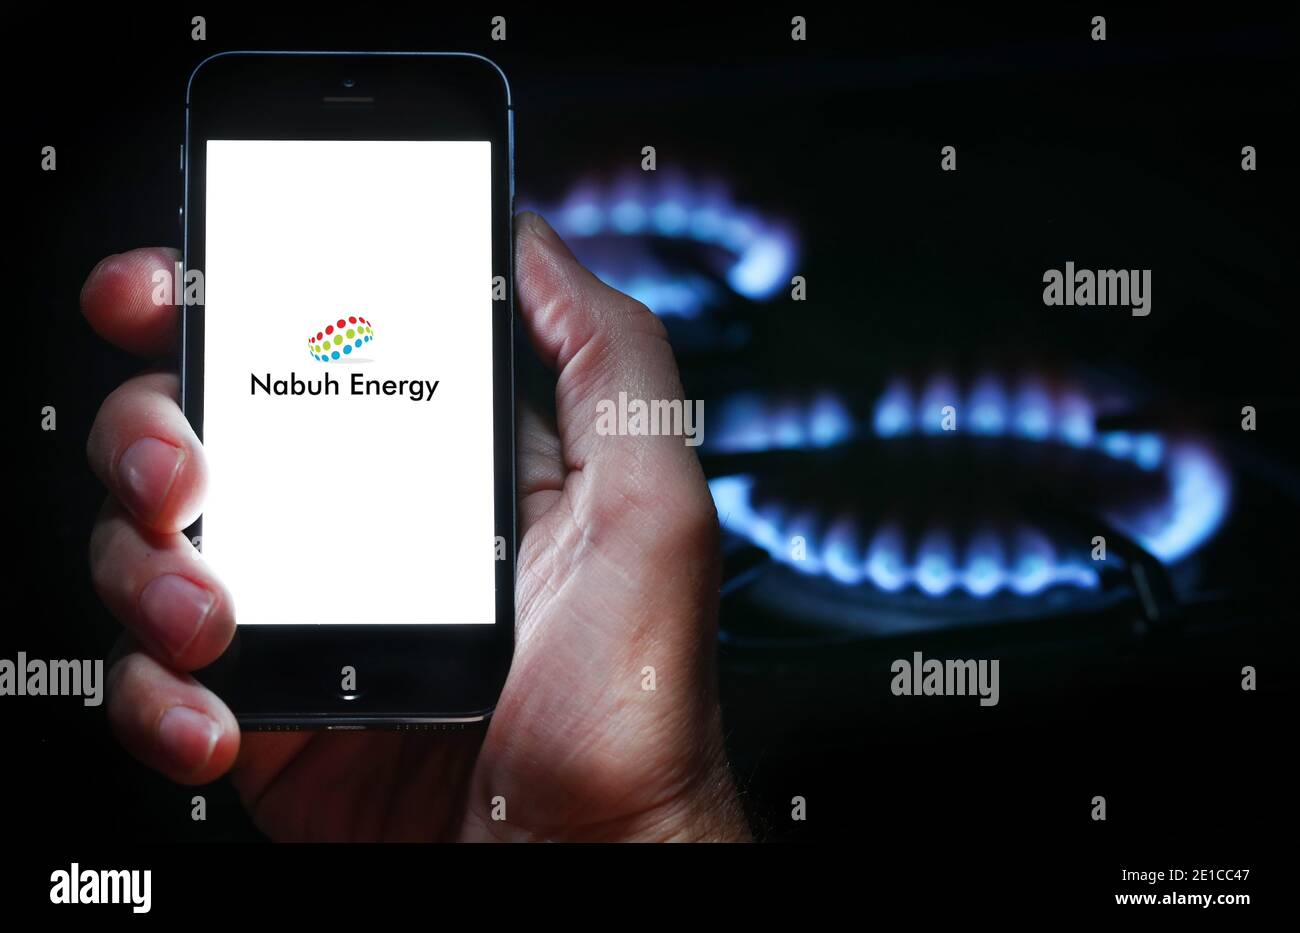 Un uomo che guarda l'app per l'azienda energetica Nabuh sul suo telefono davanti al suo fornello a gas (solo per uso editoriale) Foto Stock